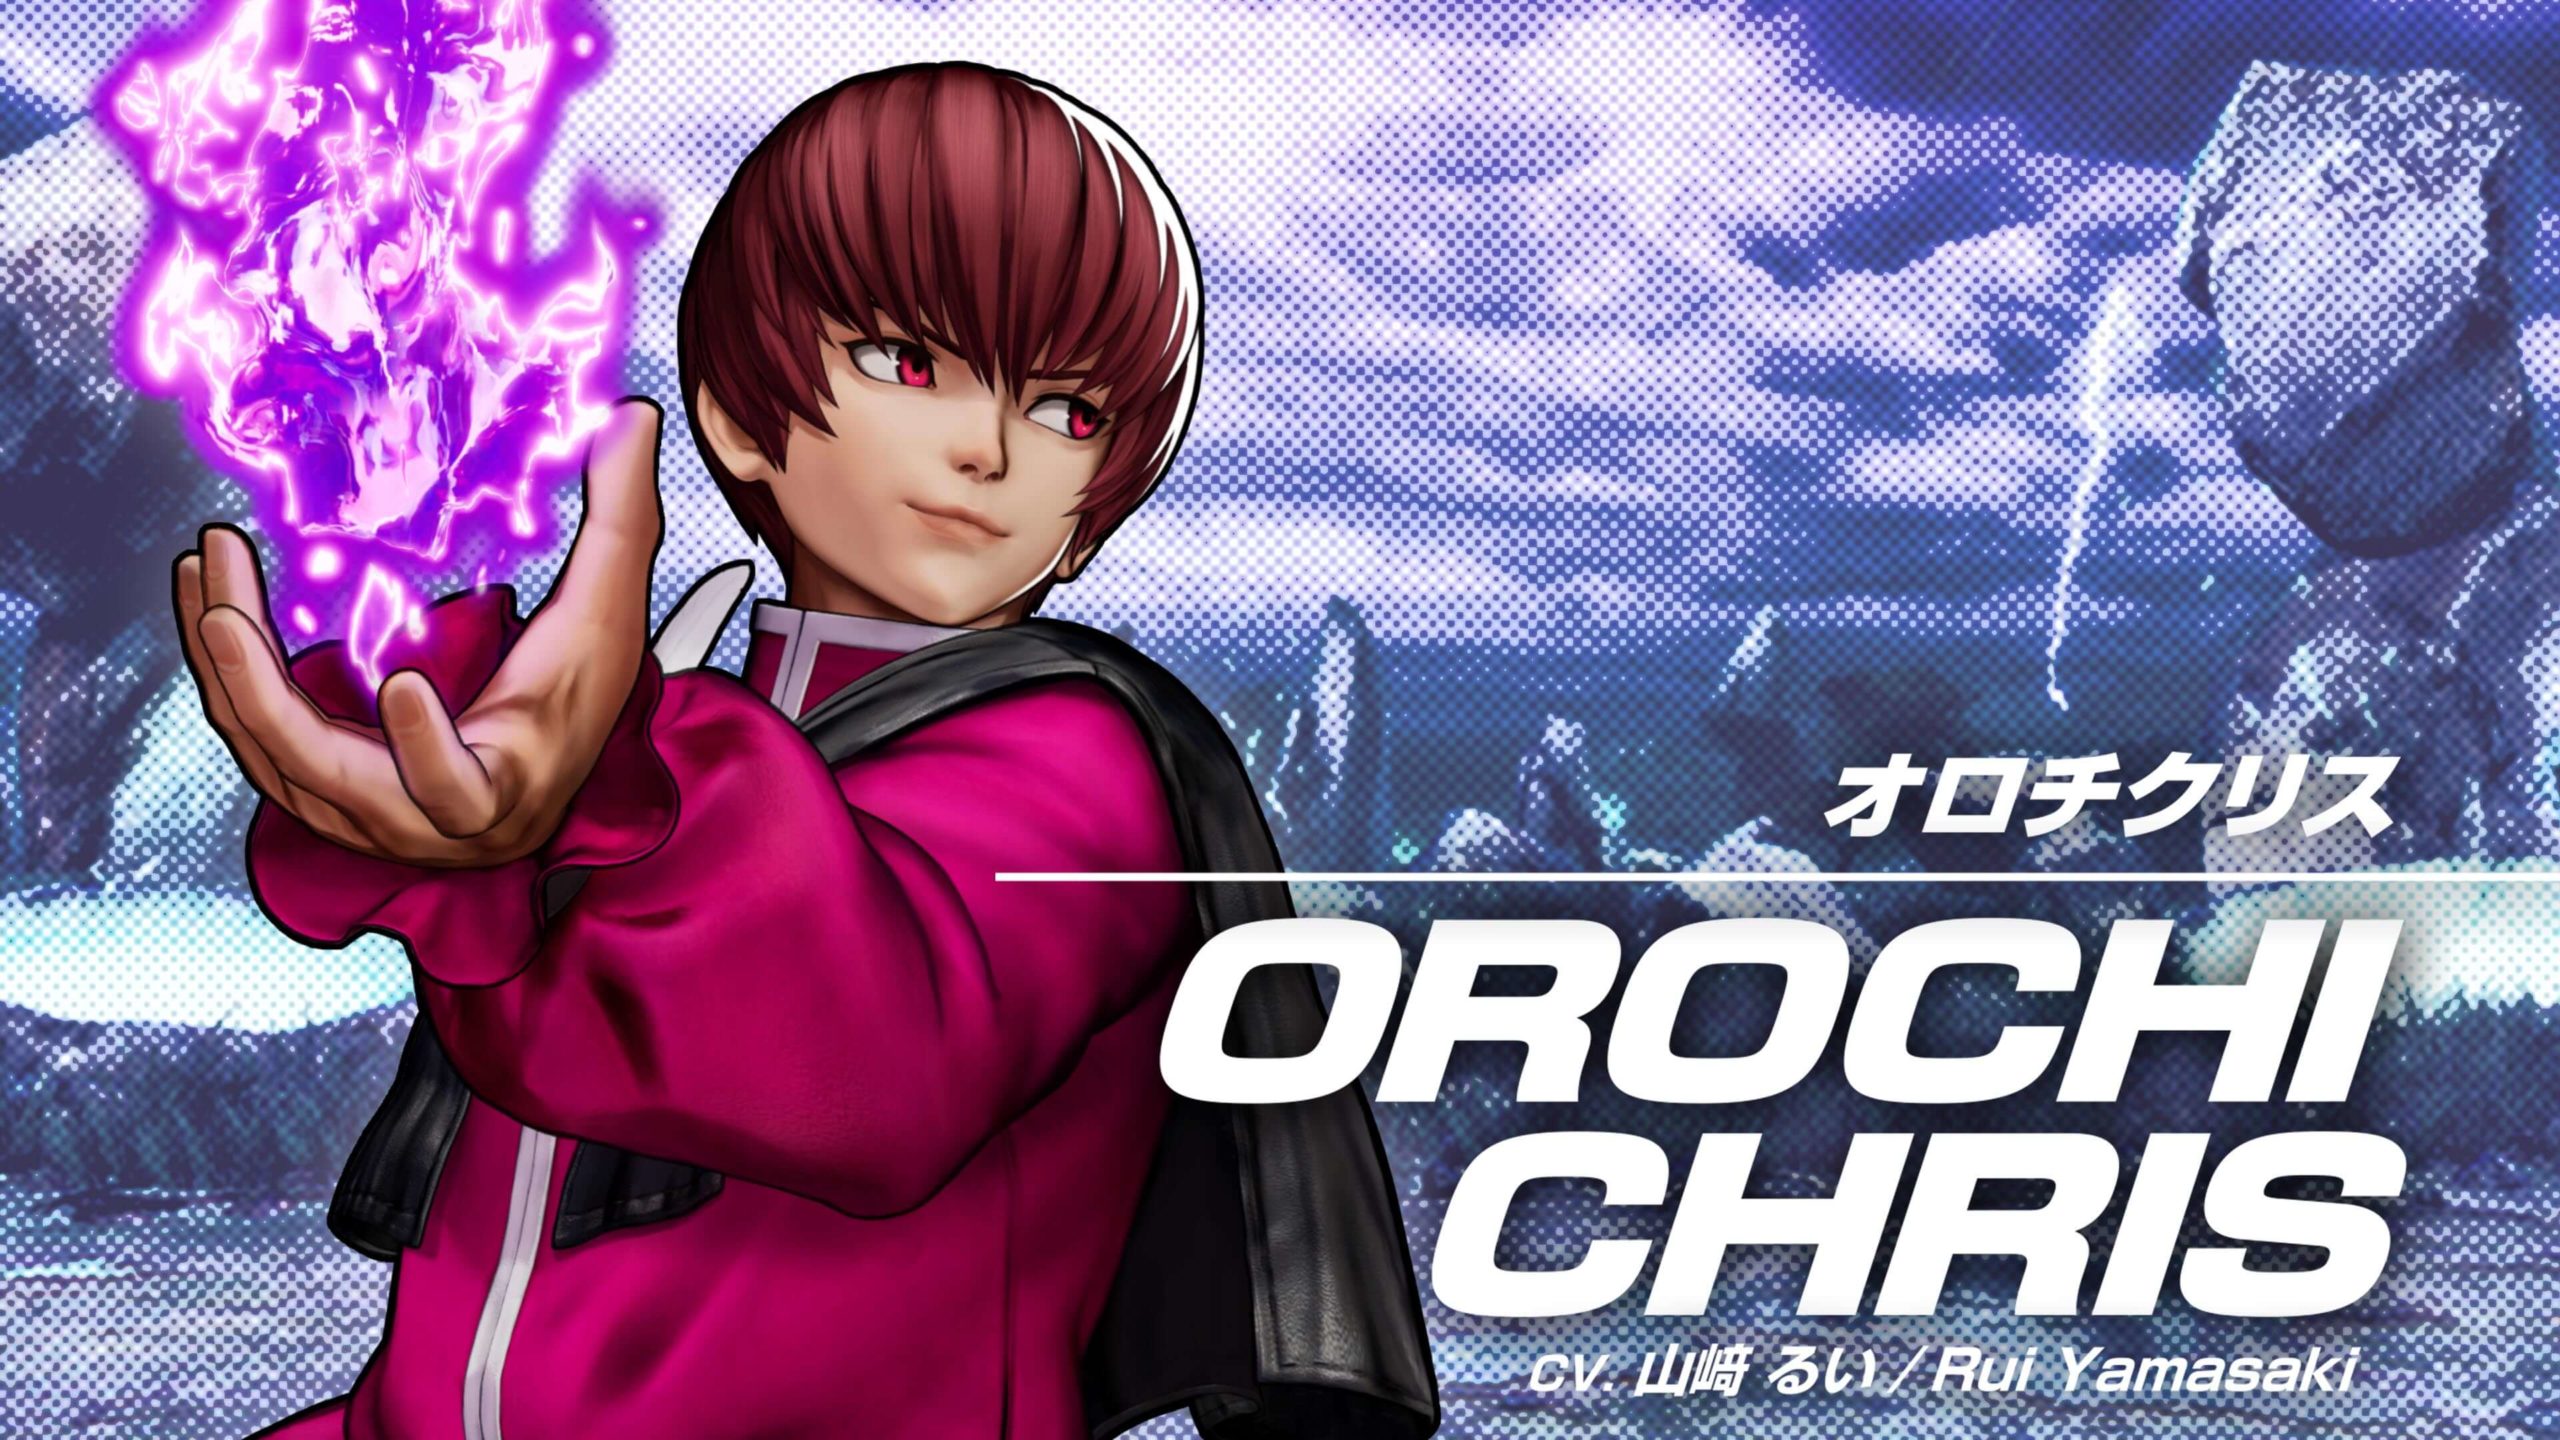 Personagens DLC da Equipe AWAKENED OROCHI se juntam a KOF XV em